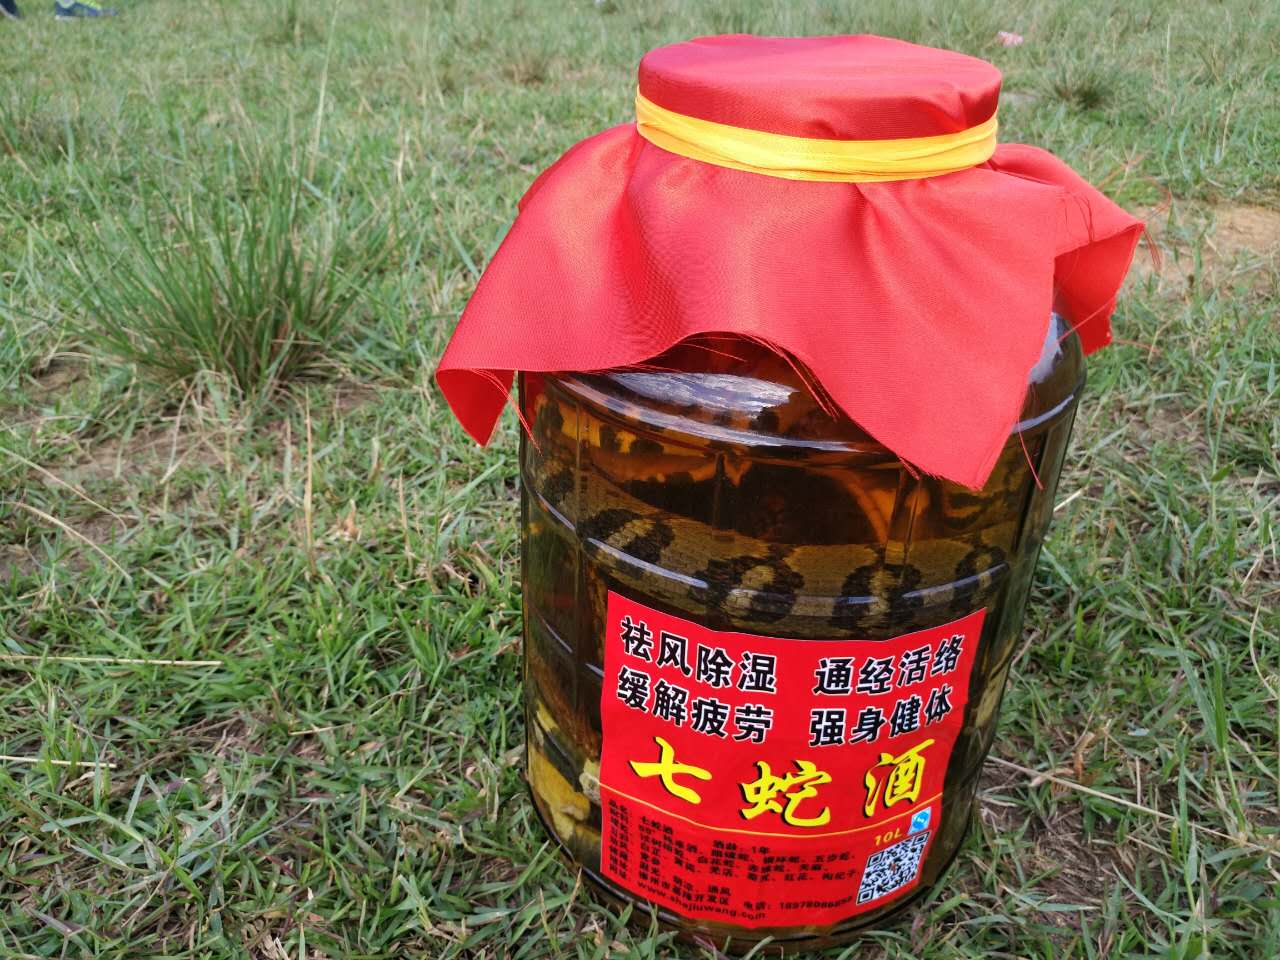 广西柳州市哪里有蛇酒卖关于目前市场上品种繁多进行定价